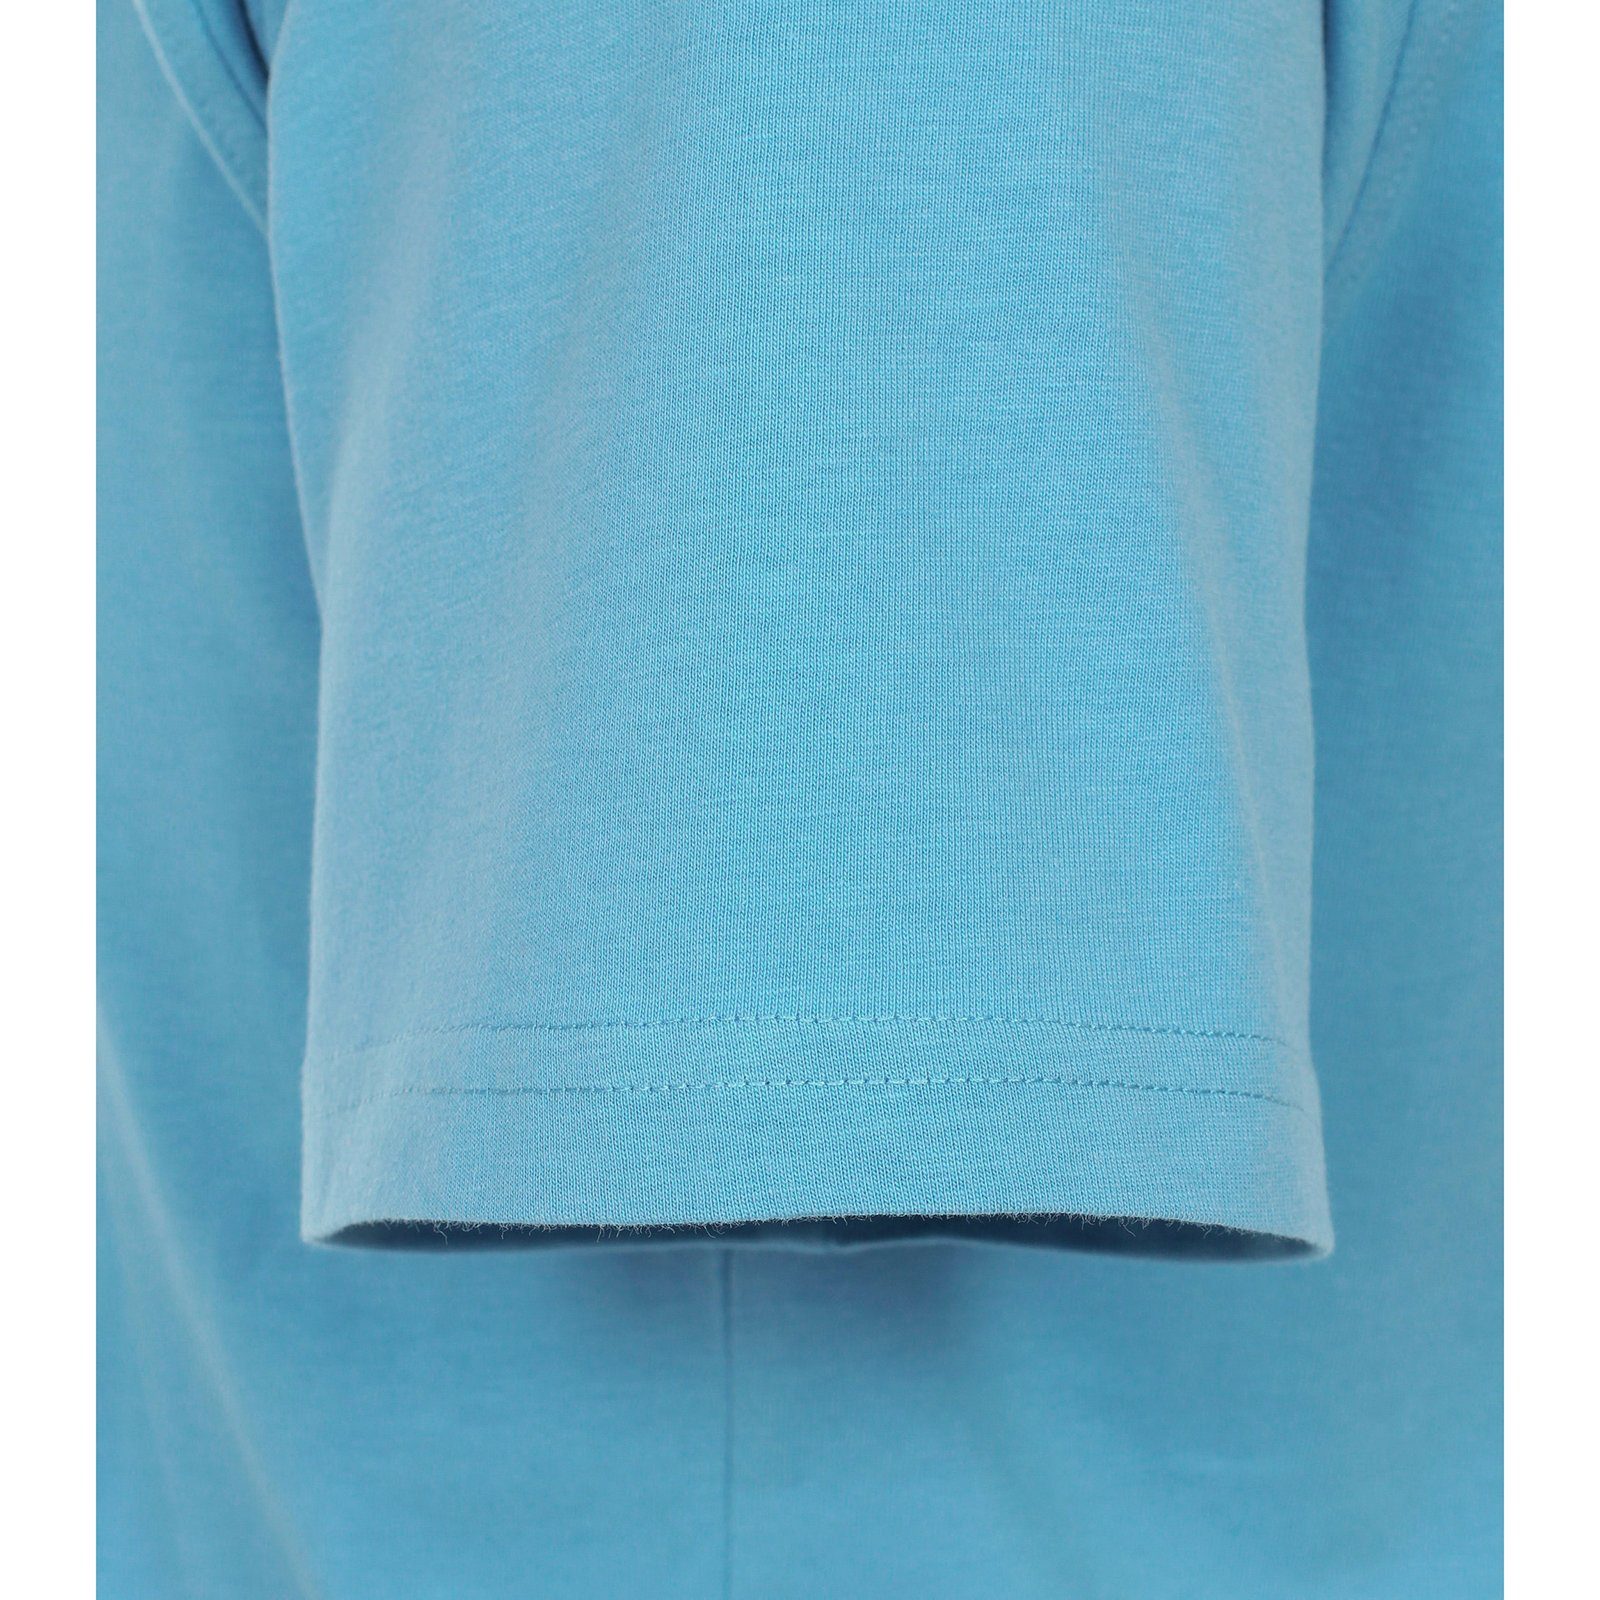 Herren modisch Cape T-Shirt CasaModa CASAMODA Rundhalsshirt Cod Große Größen blau